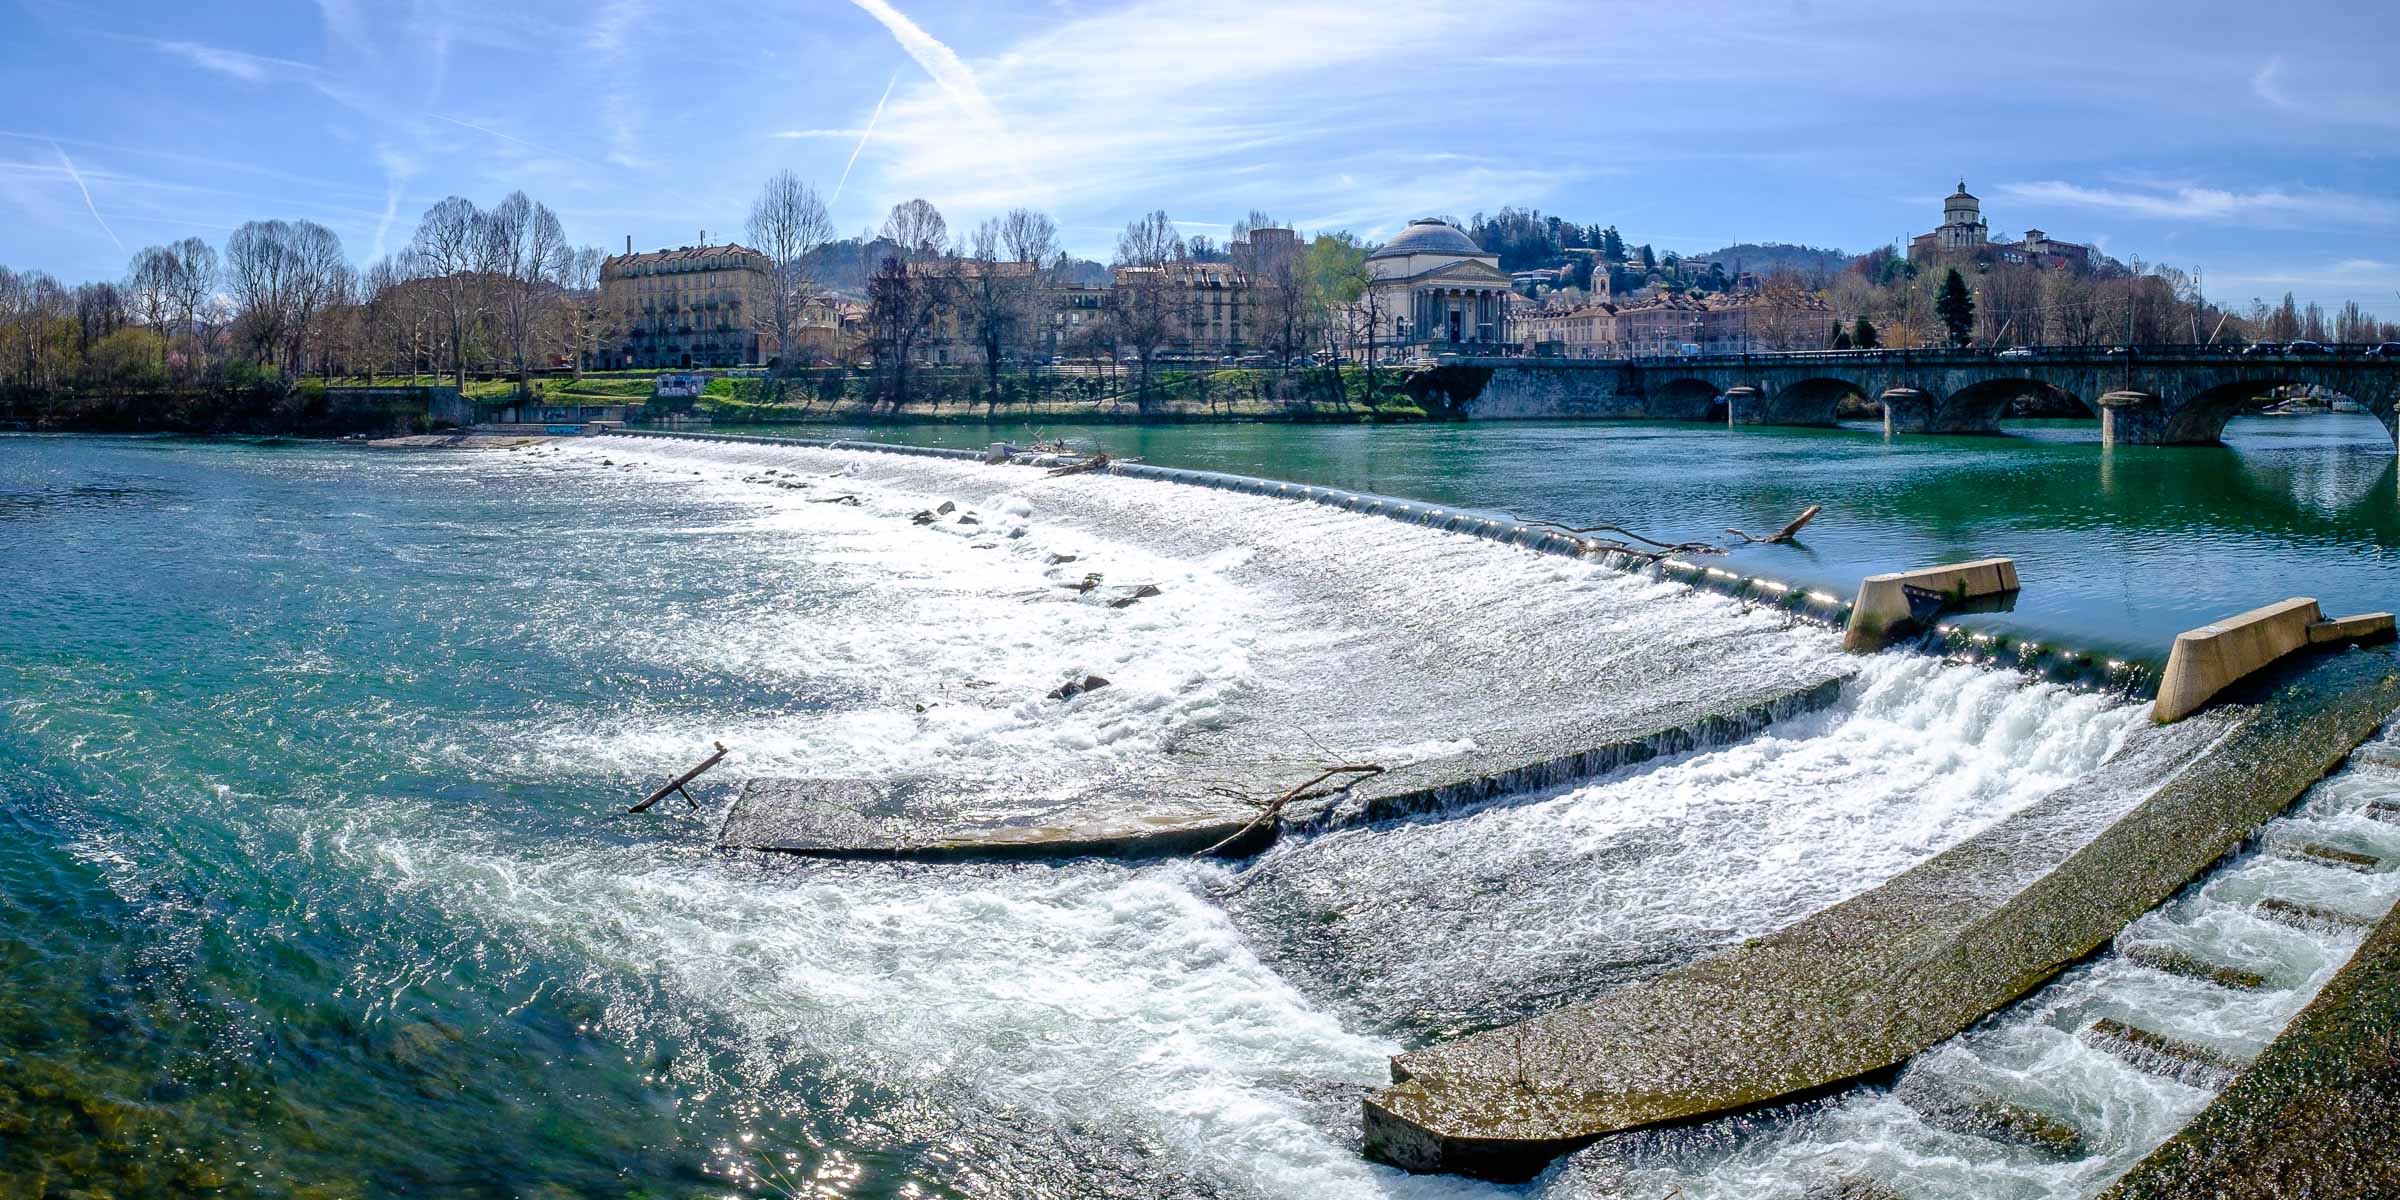 River Po, Turin, Italy